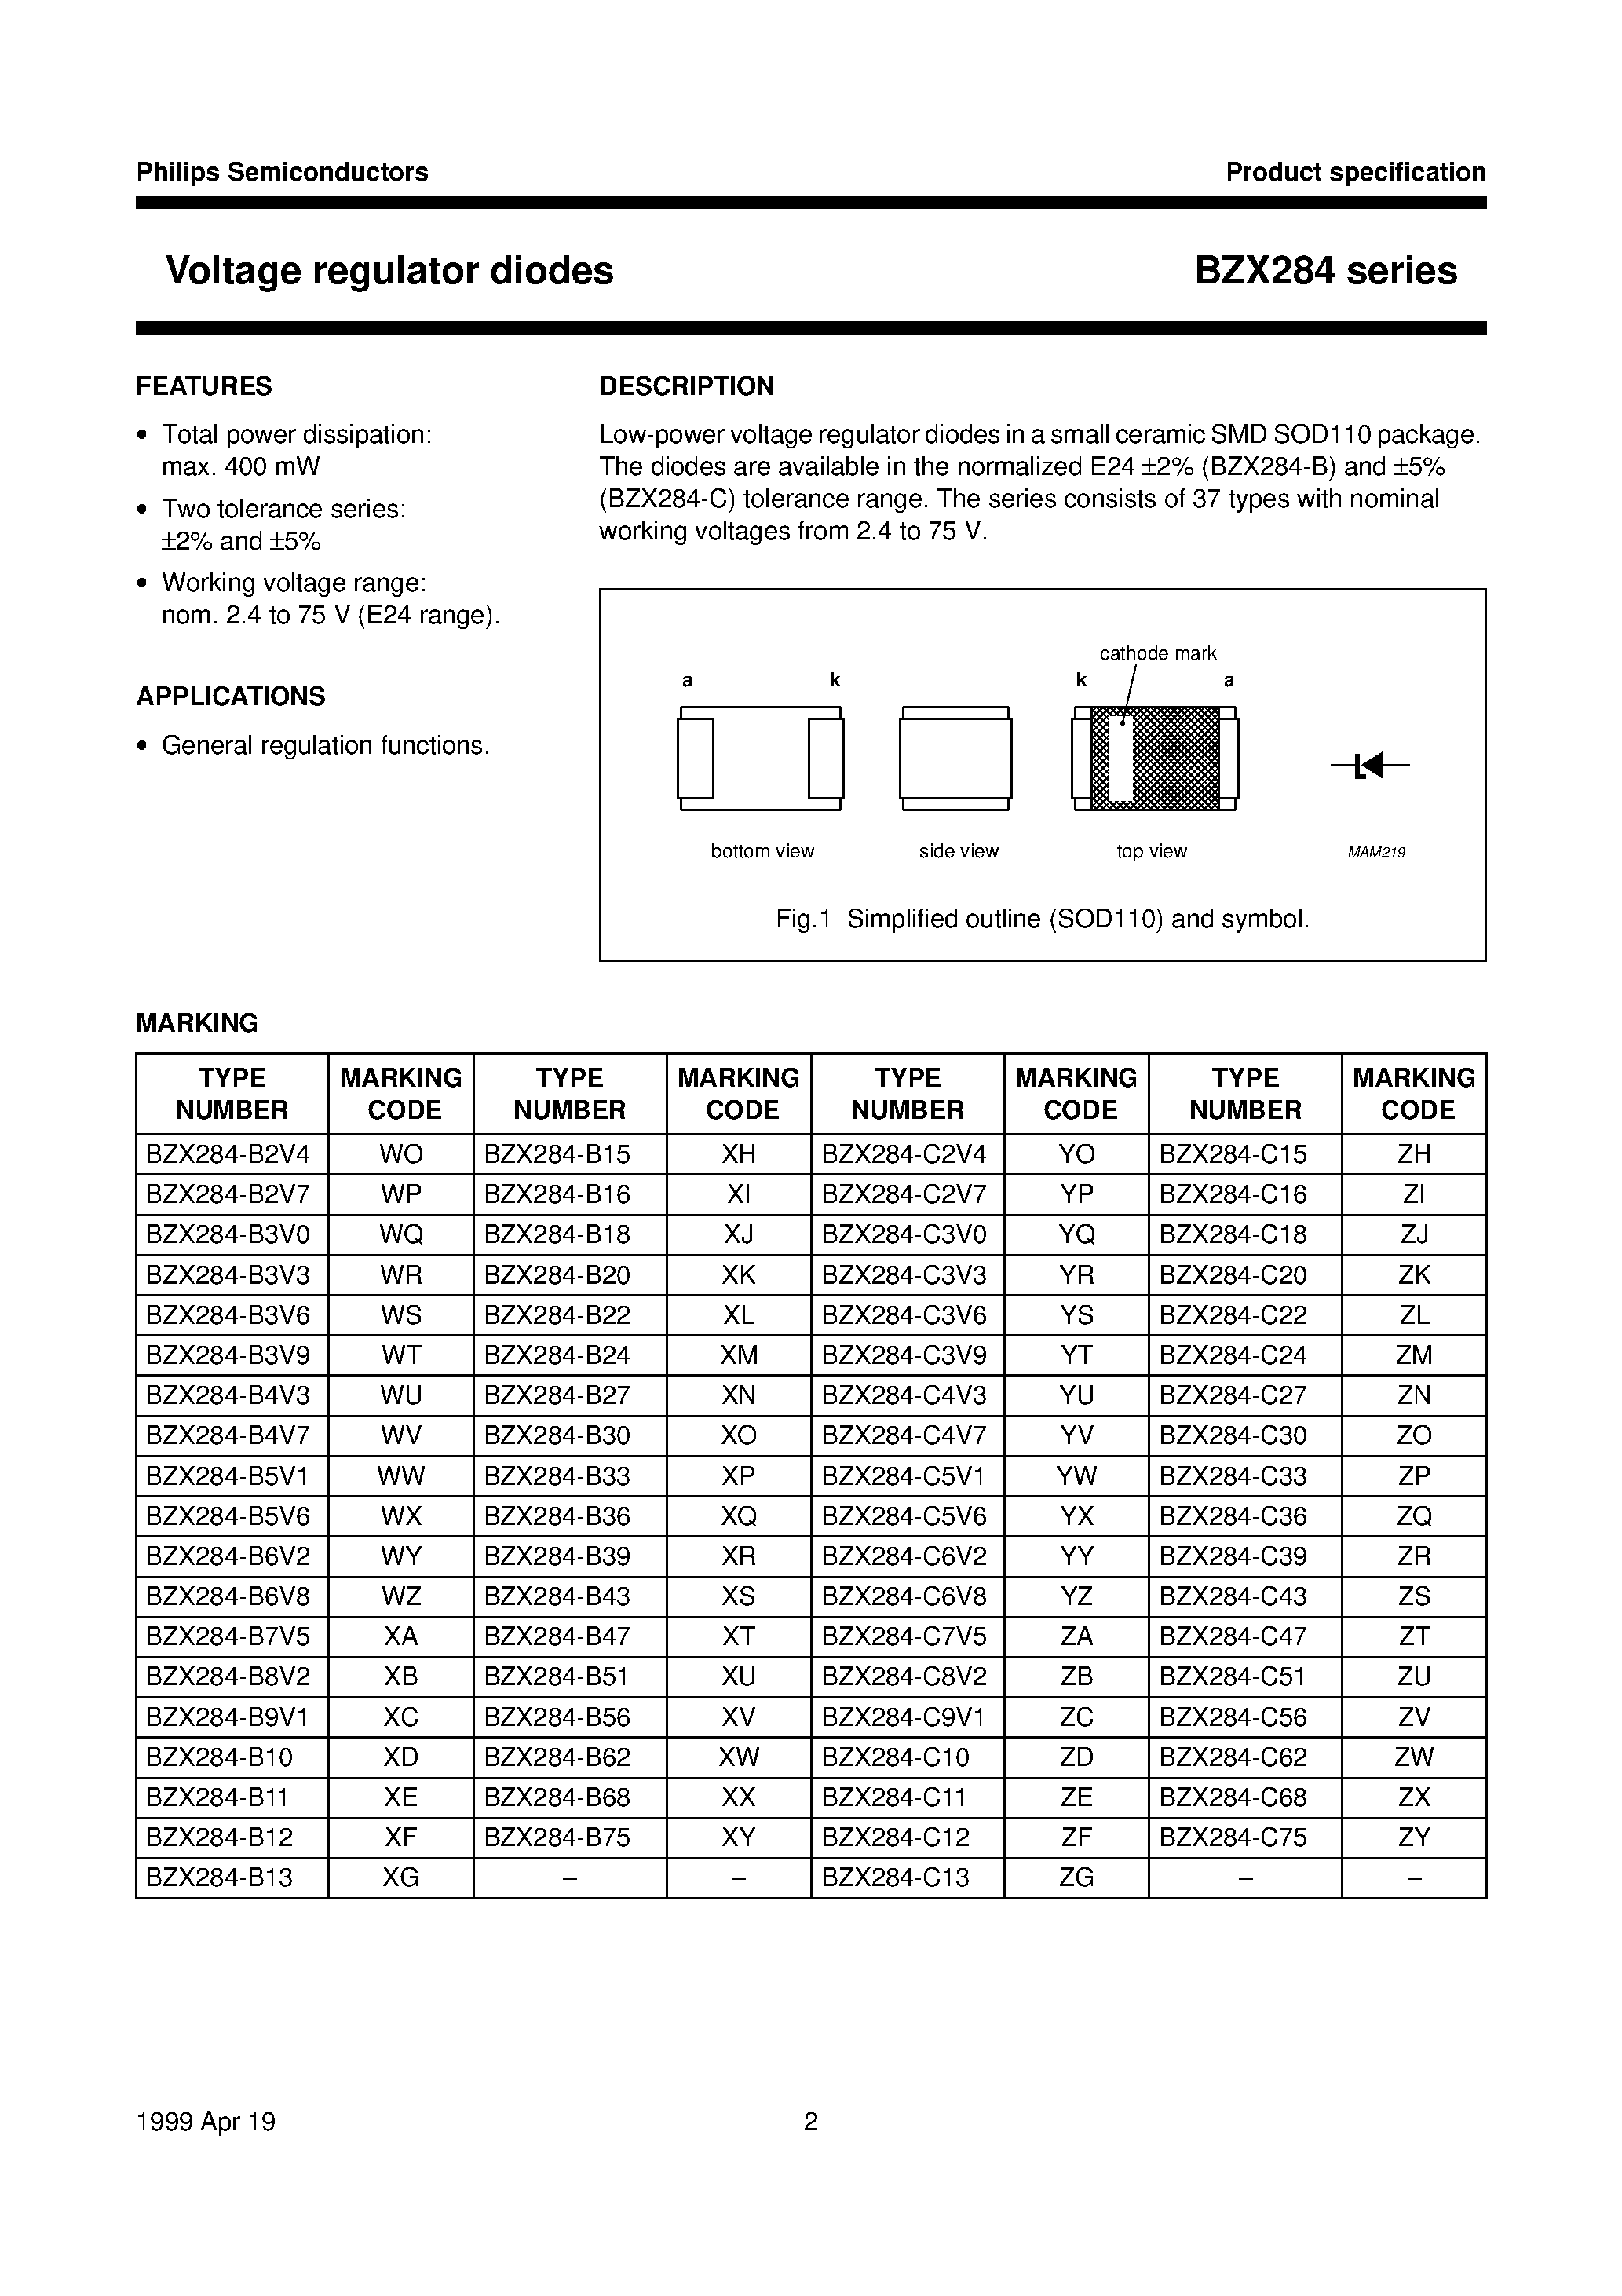 Datasheet BZX284-B20 - Voltage regulator diodes page 2